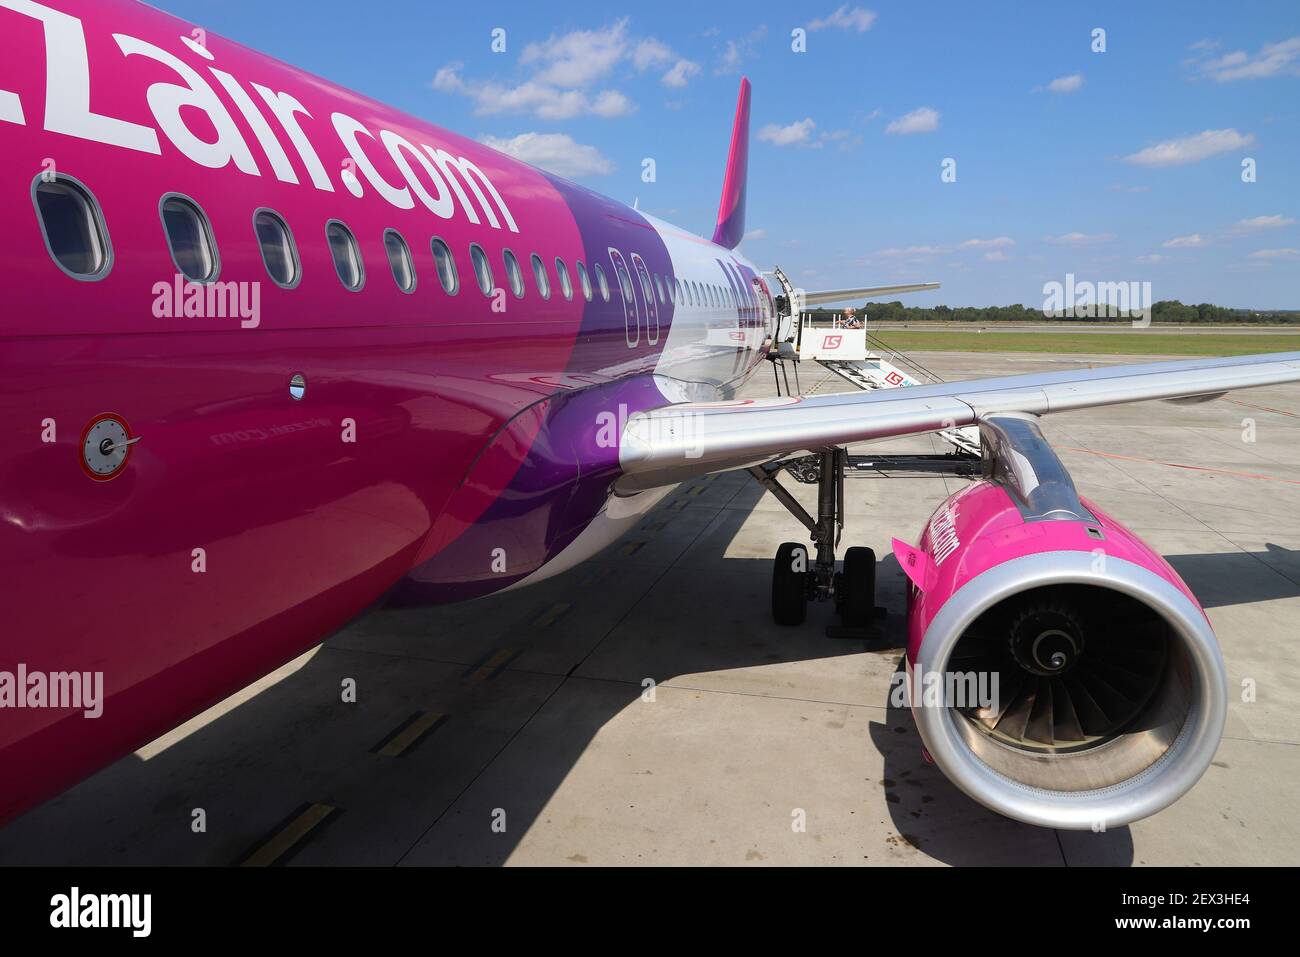 KATOWICE IN POLONIA - Agosto 22, 2018: passeggeri compagnia aerea a basso costo Wizz Air un aeromobile di tipo Airbus A320 a aeroporto Katowice in Polonia. Katowice è il 4. Foto Stock